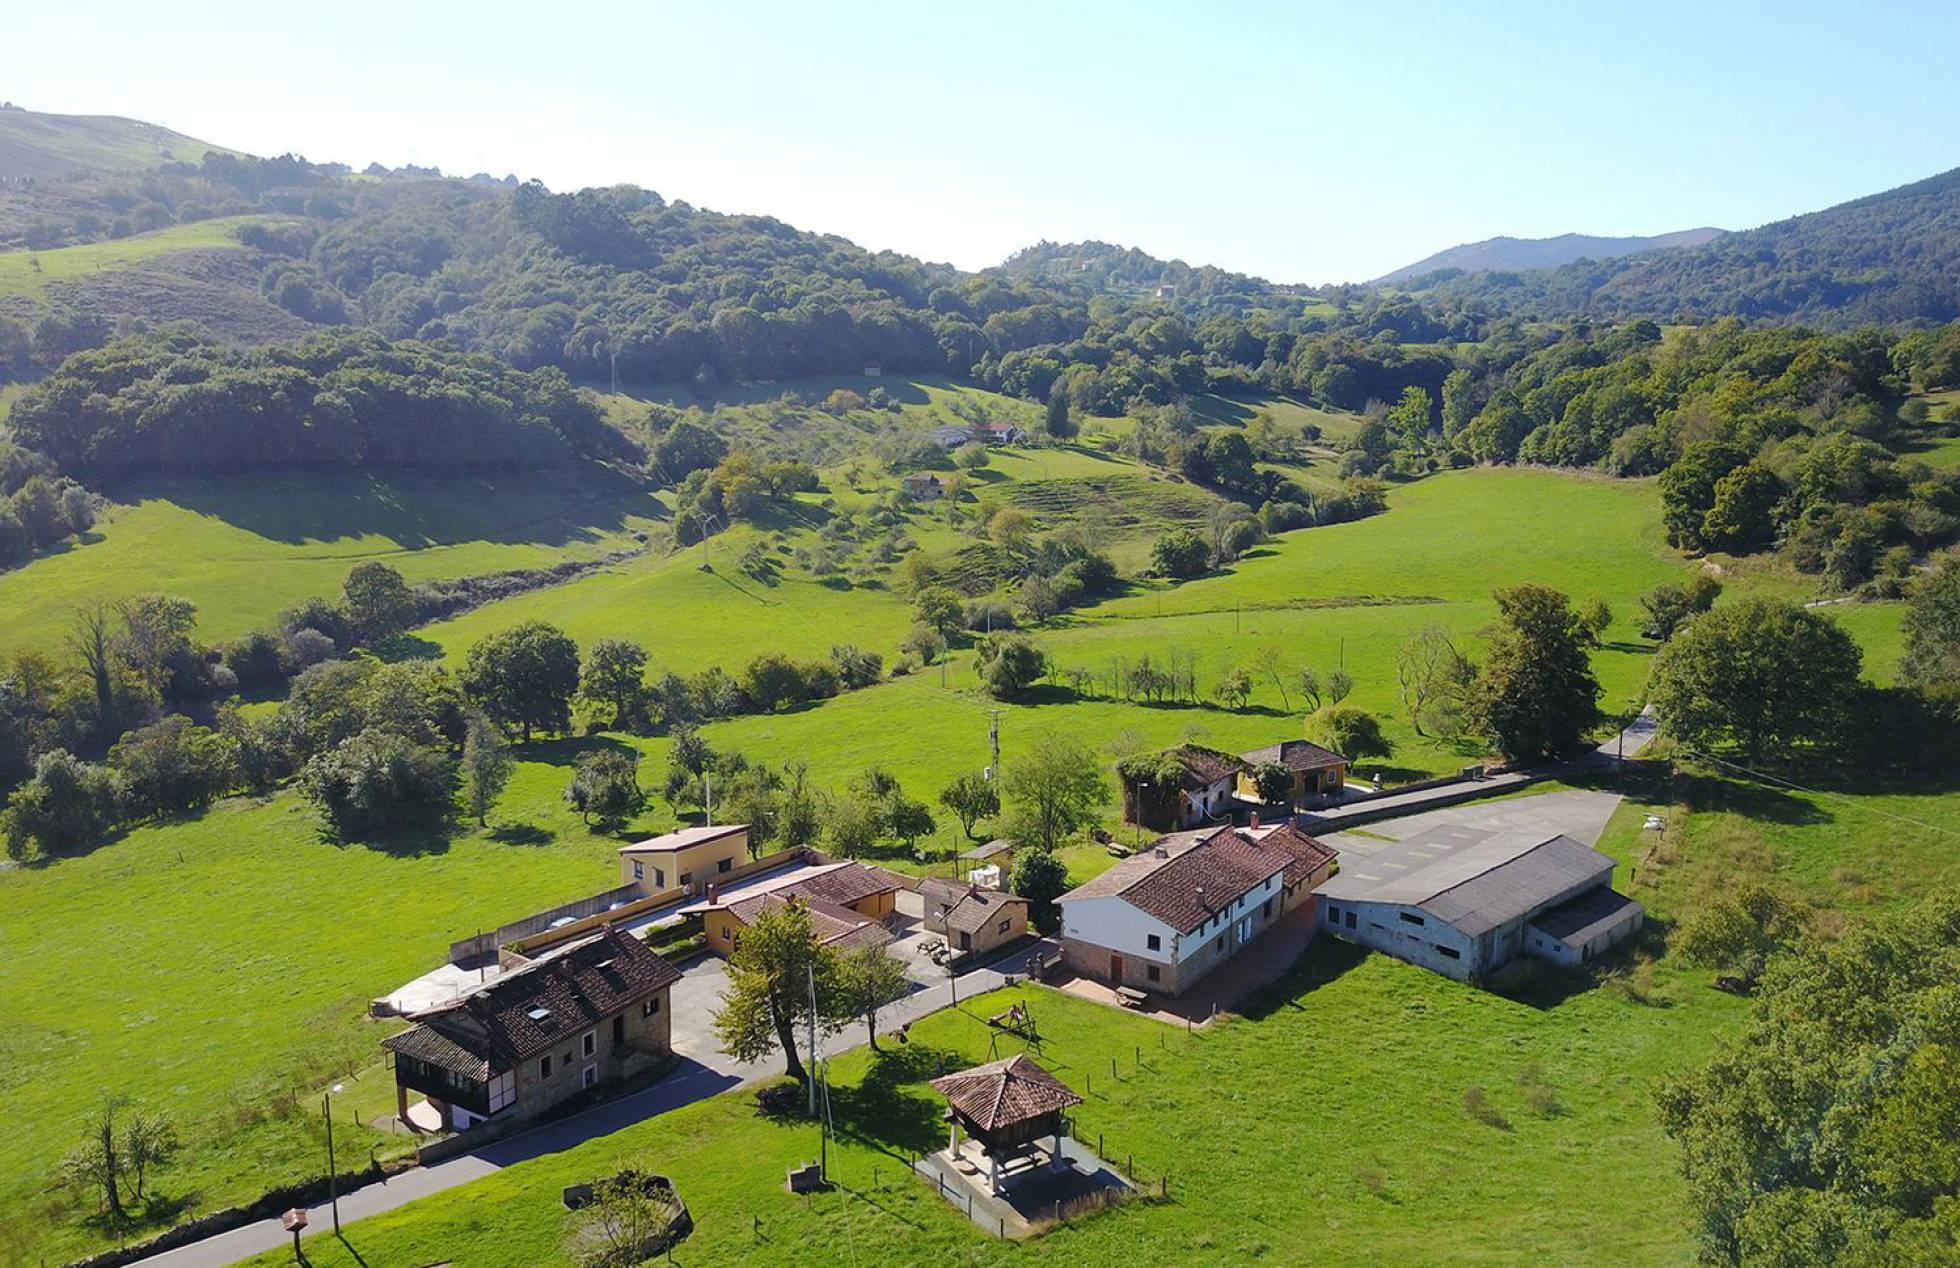 Sale a la venta un precioso pueblo en Asturias por 2.375.000 euros 1